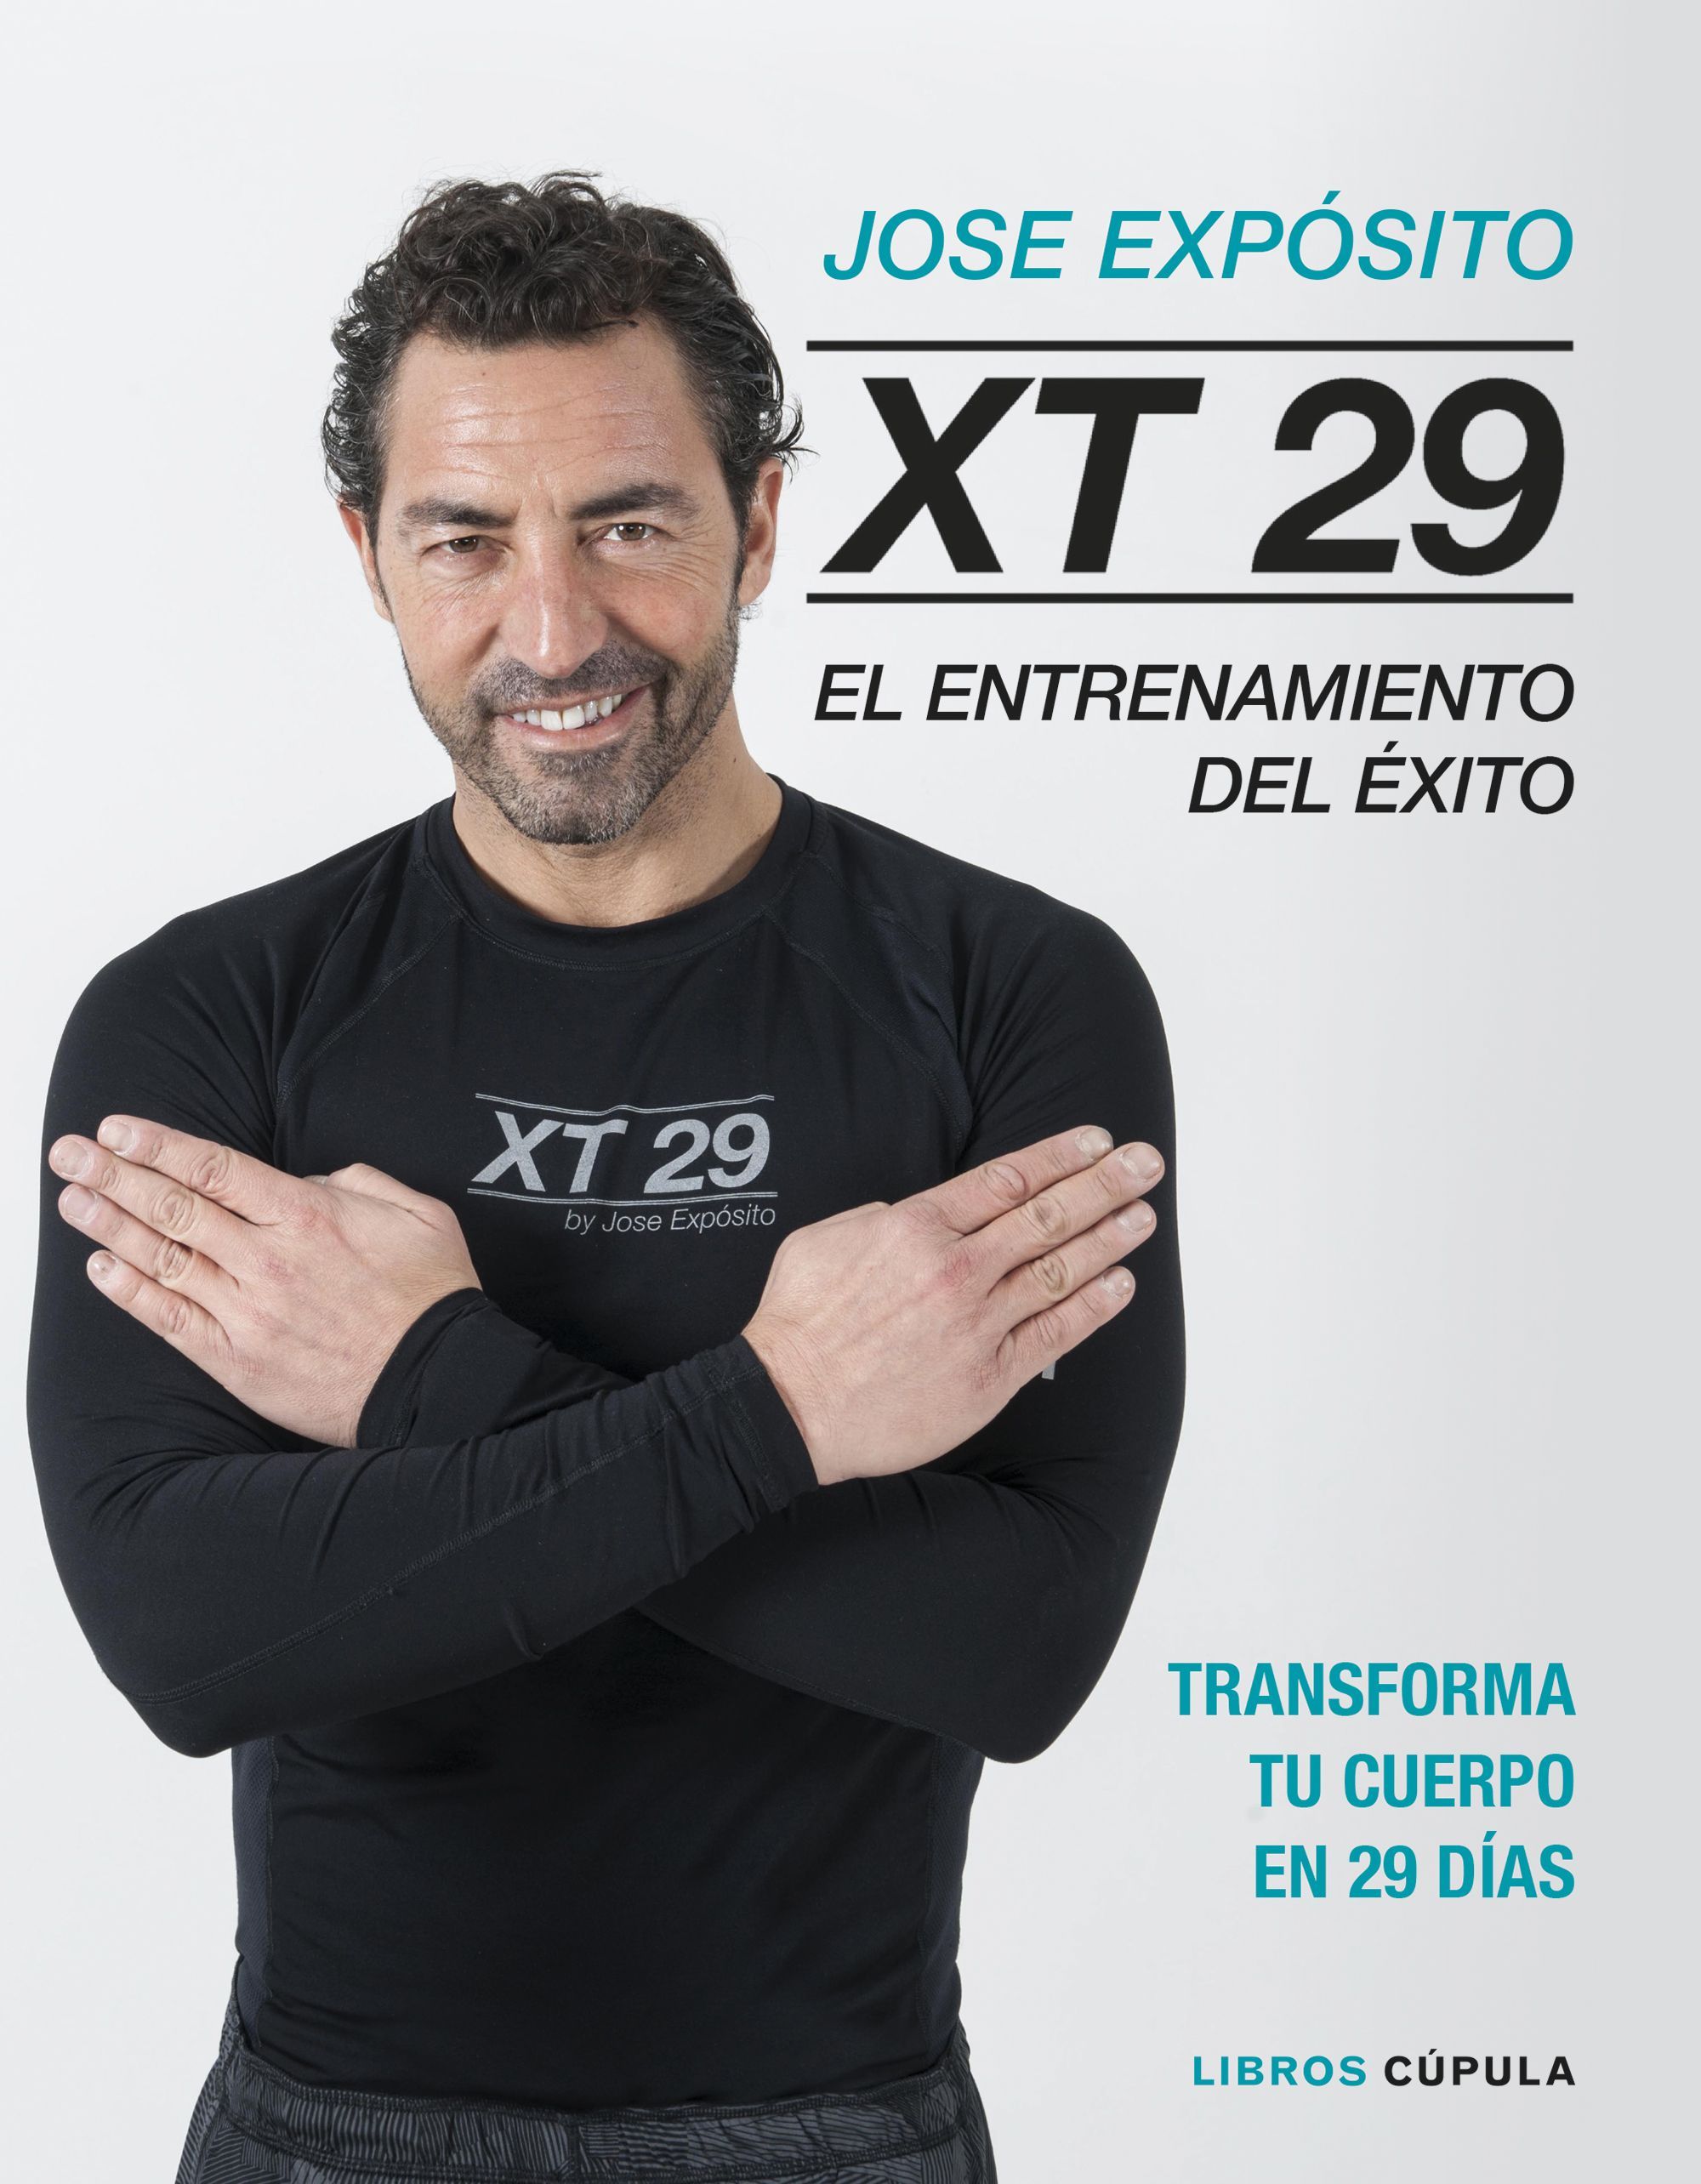 El entrenador José Expósito desvela su método para transformar el cuerpo en 29 días